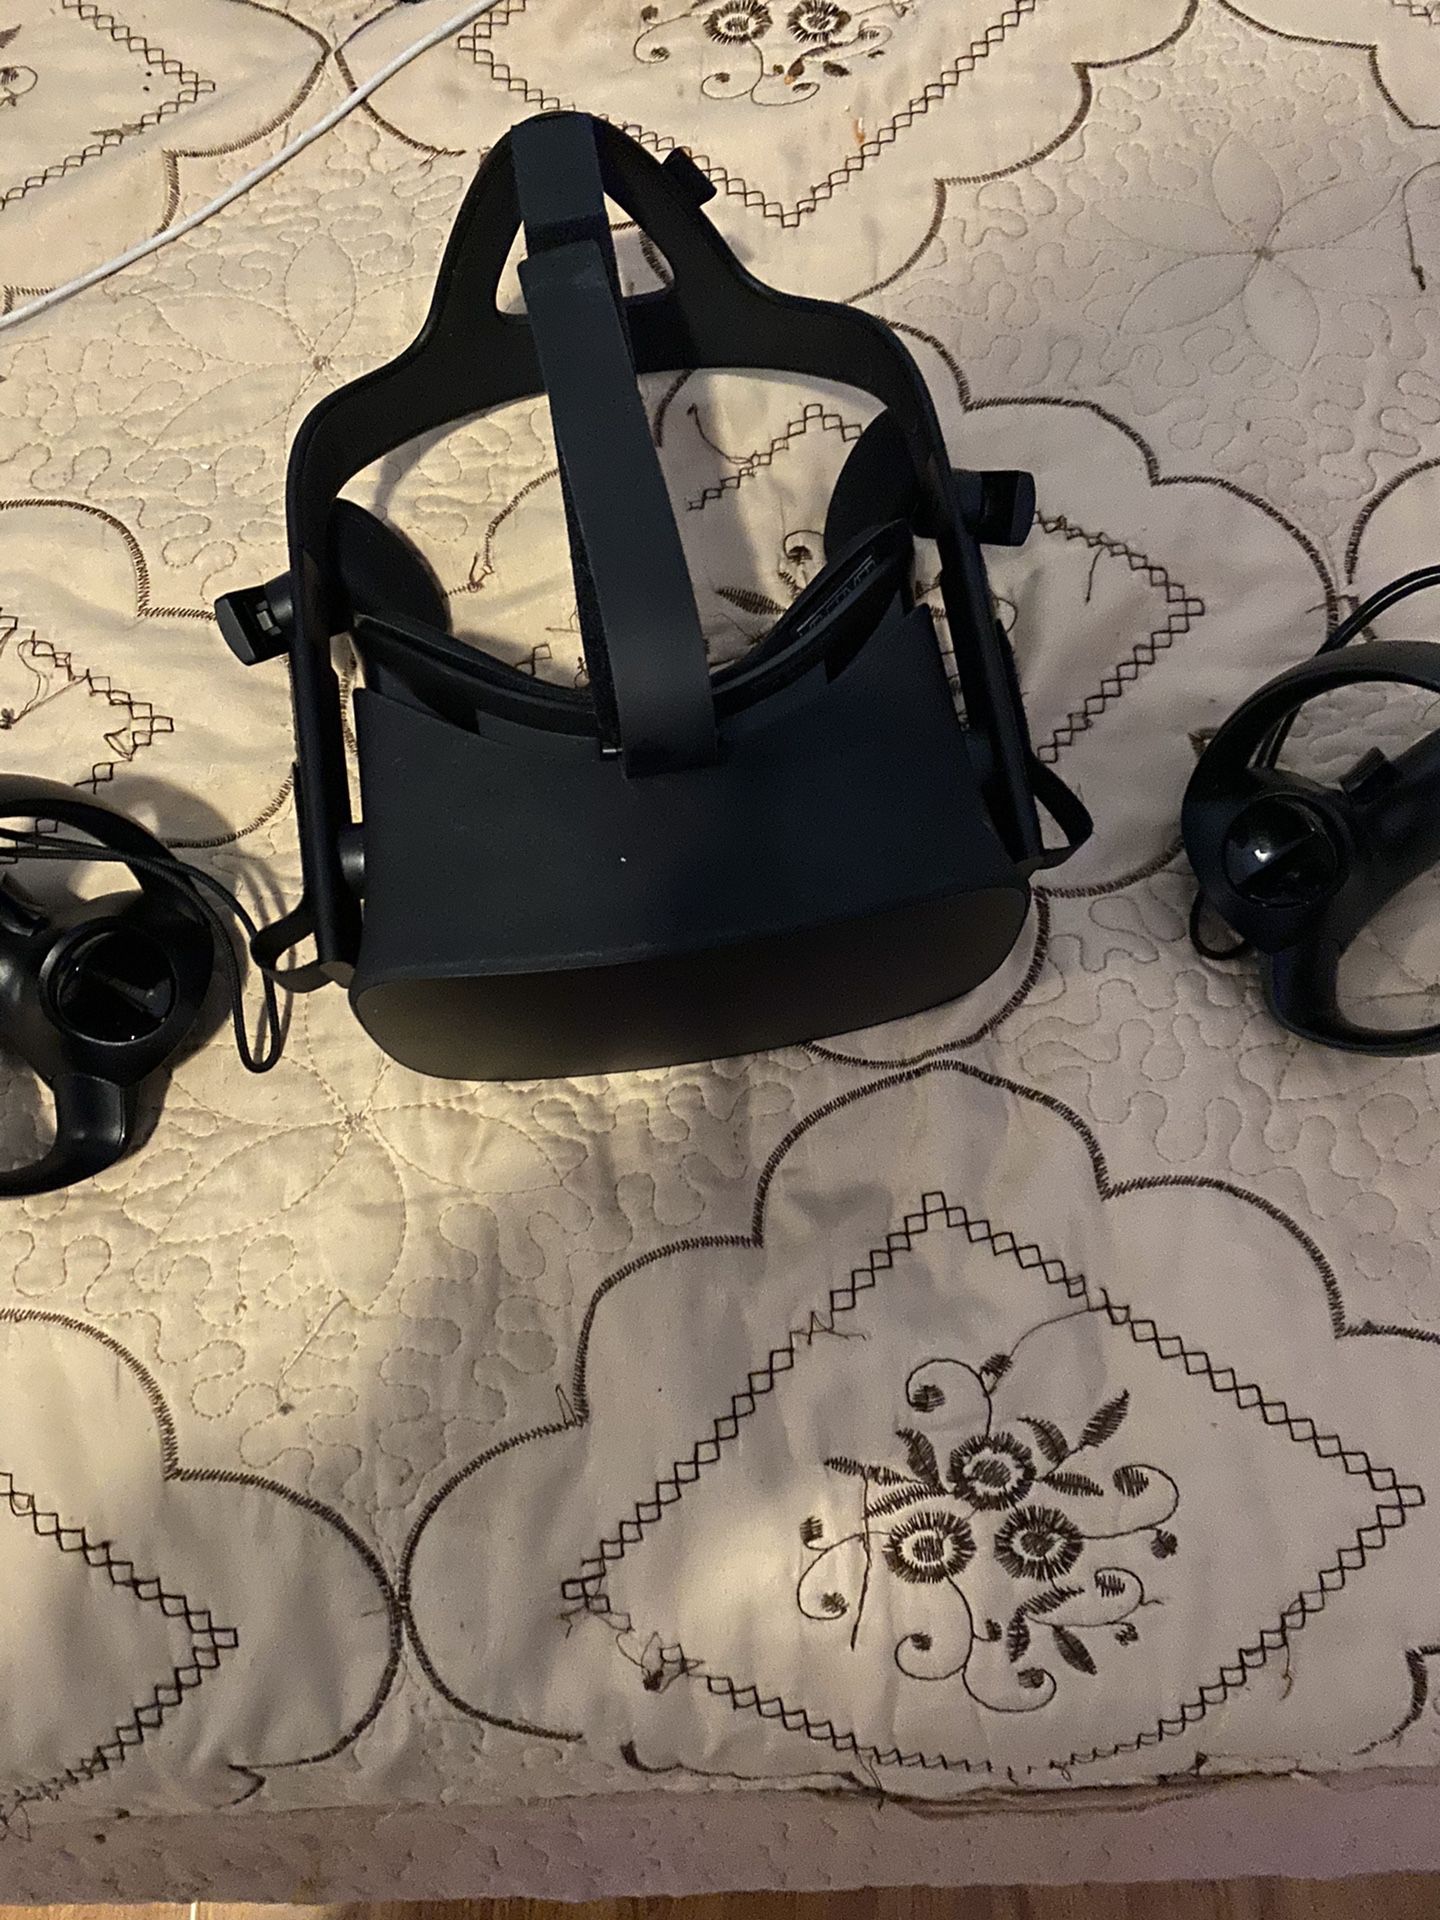 Oculus Rift cv1